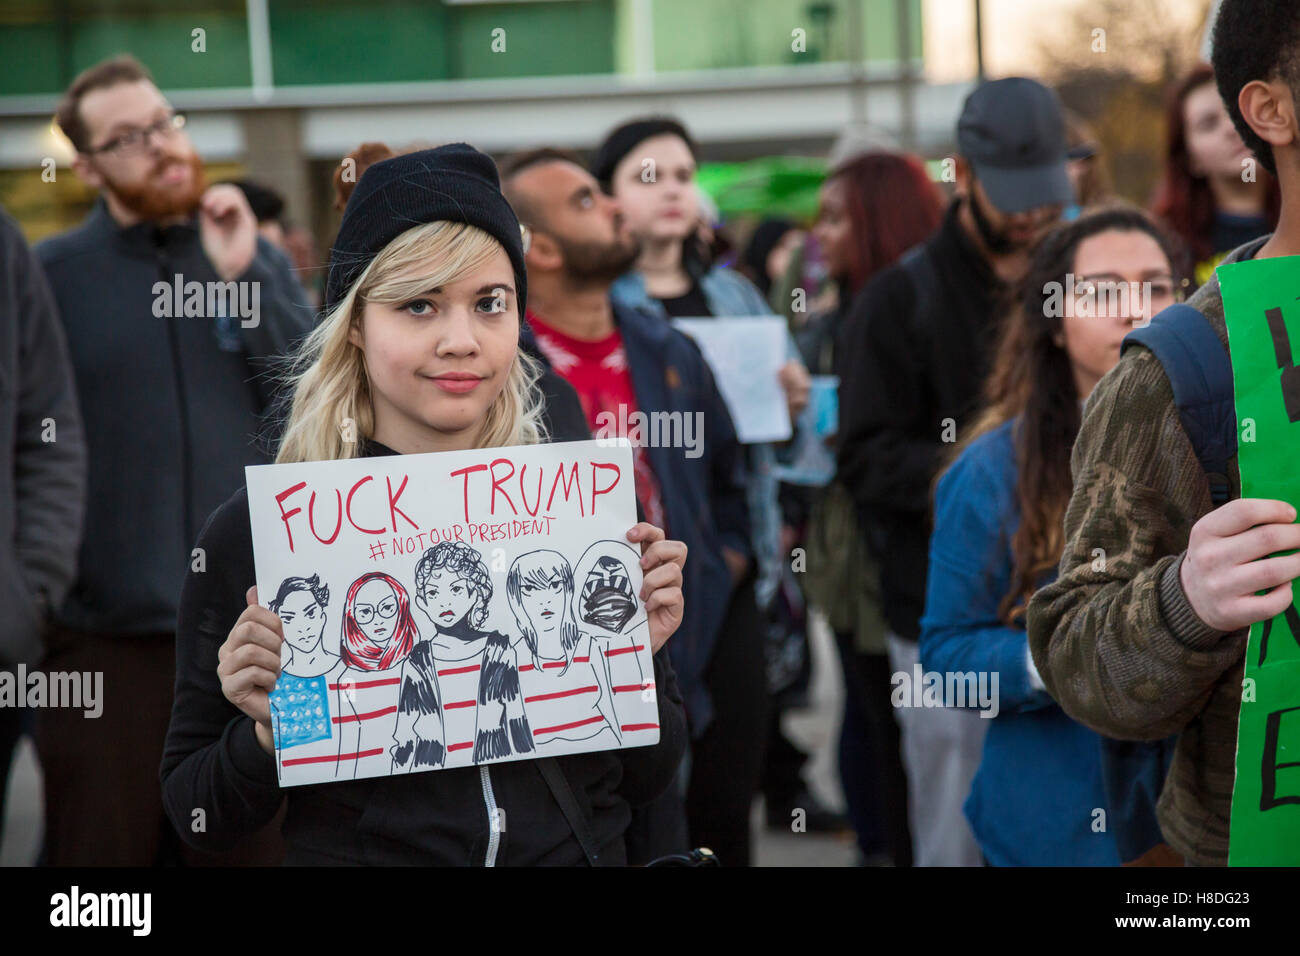 Detroit, Michigan, USA. 10 novembre, 2016. Les étudiants de l'Université Wayne State protester contre l'élection de Donald Trump comme président des États-Unis. Crédit : Jim West/Alamy Live News Banque D'Images